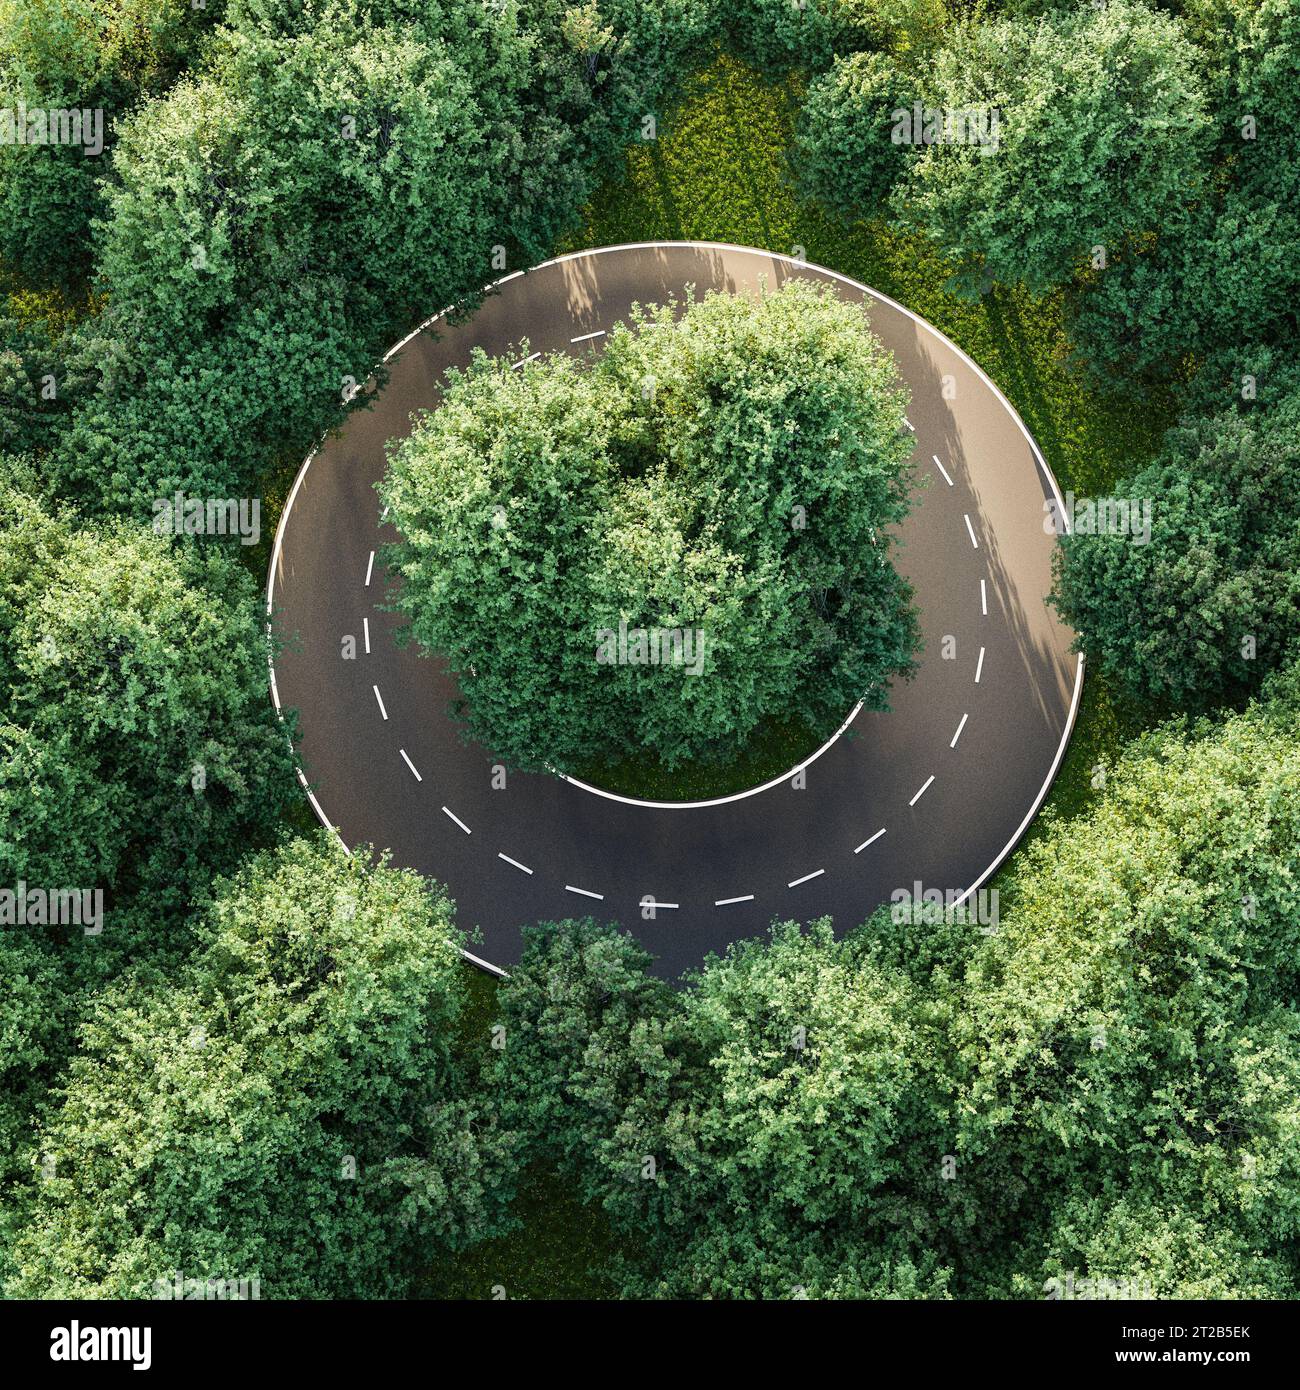 Luftbild einer kreisförmigen Straße in einem Ulmenwald - Konzept für keinen Ausweg, Hoffnungslosigkeit, Langeweile, Gleichmäßigkeit, Konformität. 3D-Rendering Stockfoto